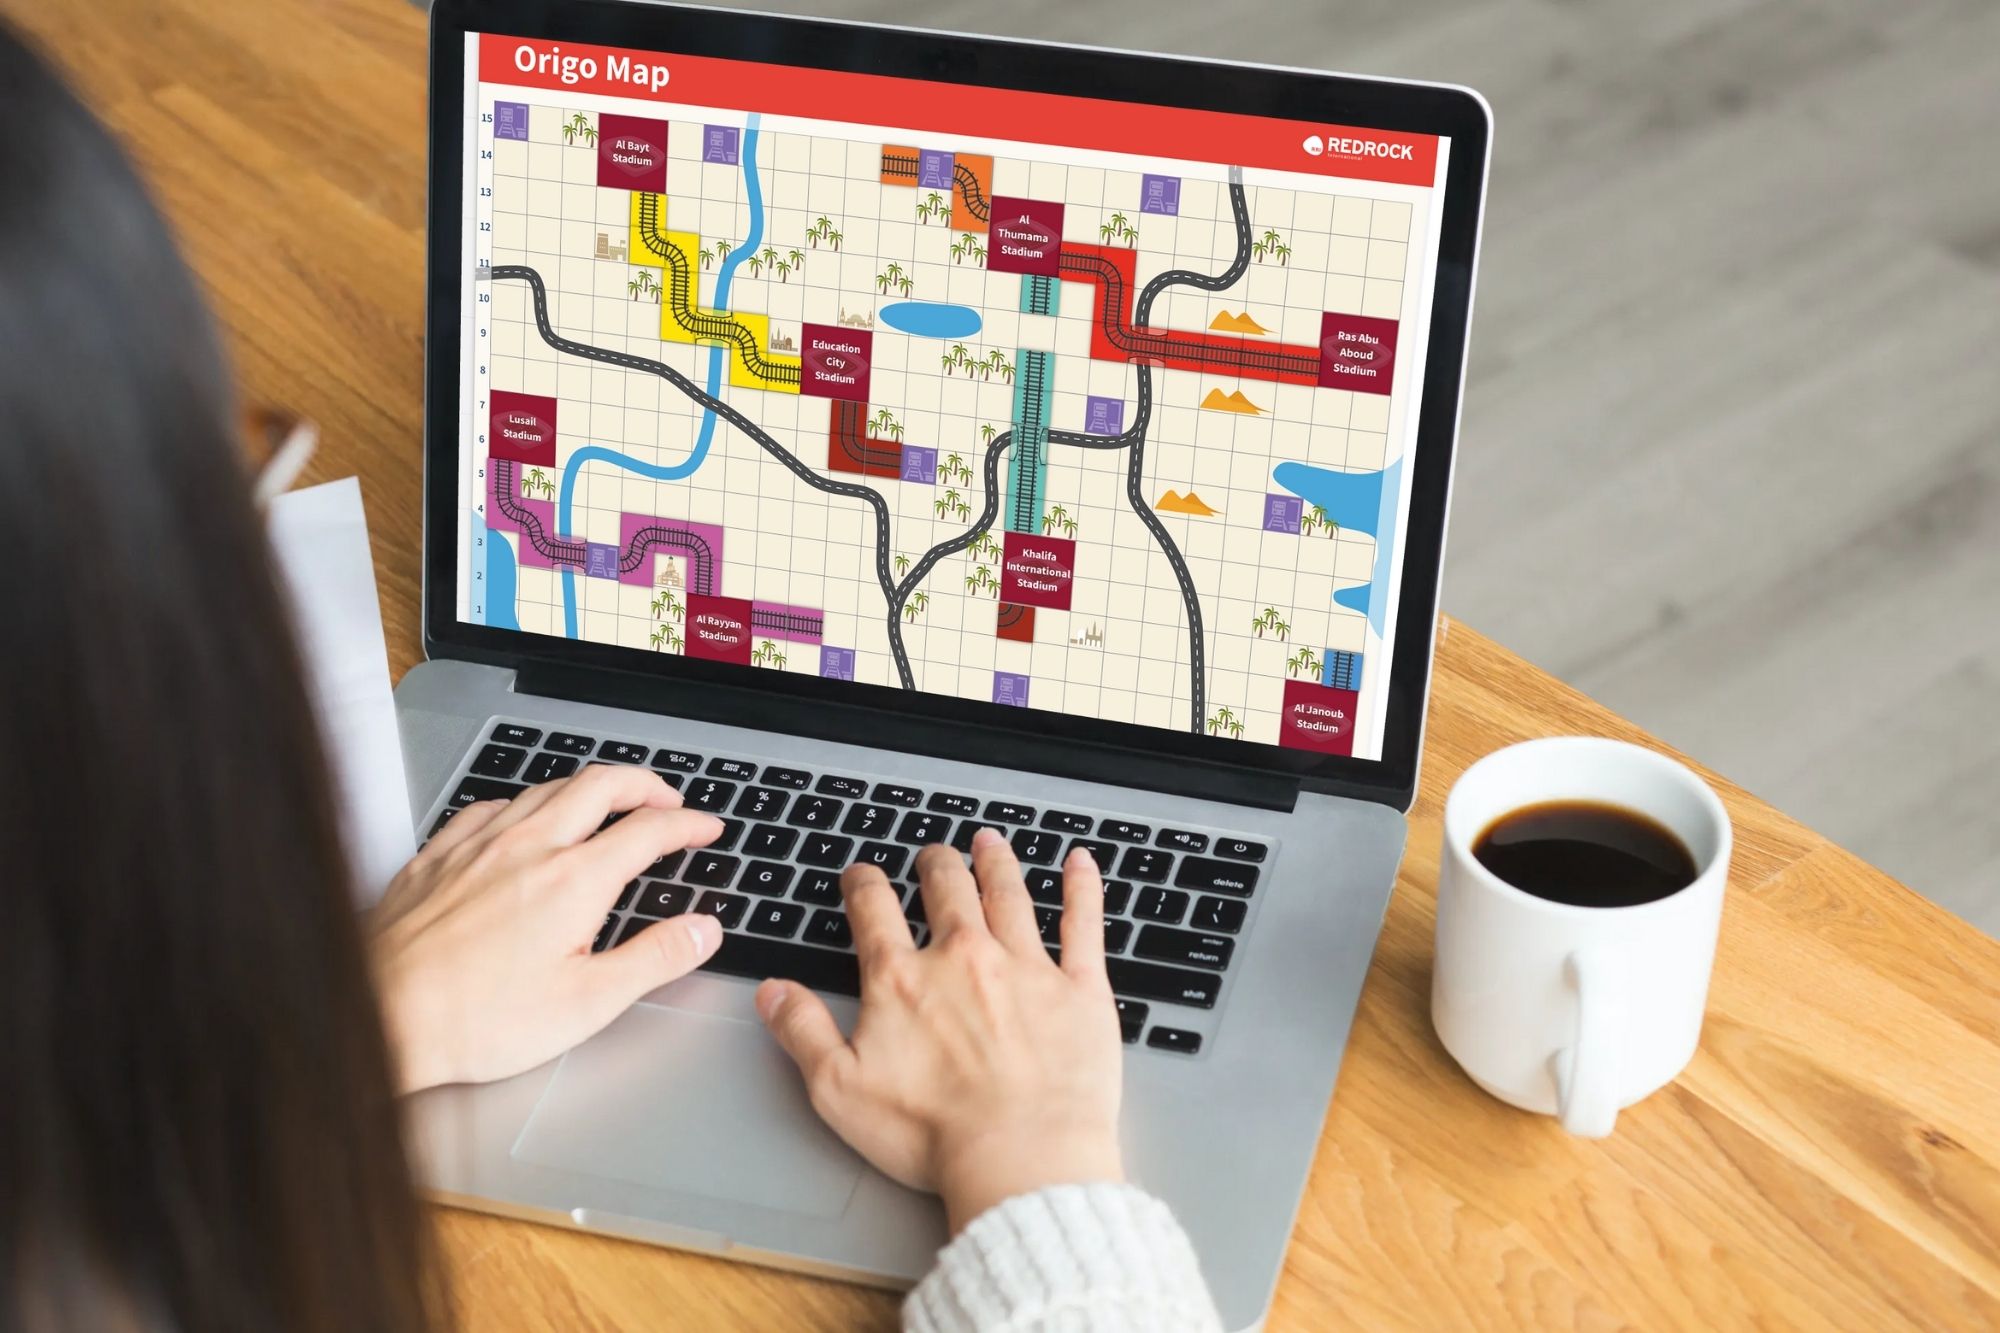 A lady using the origo online team building map